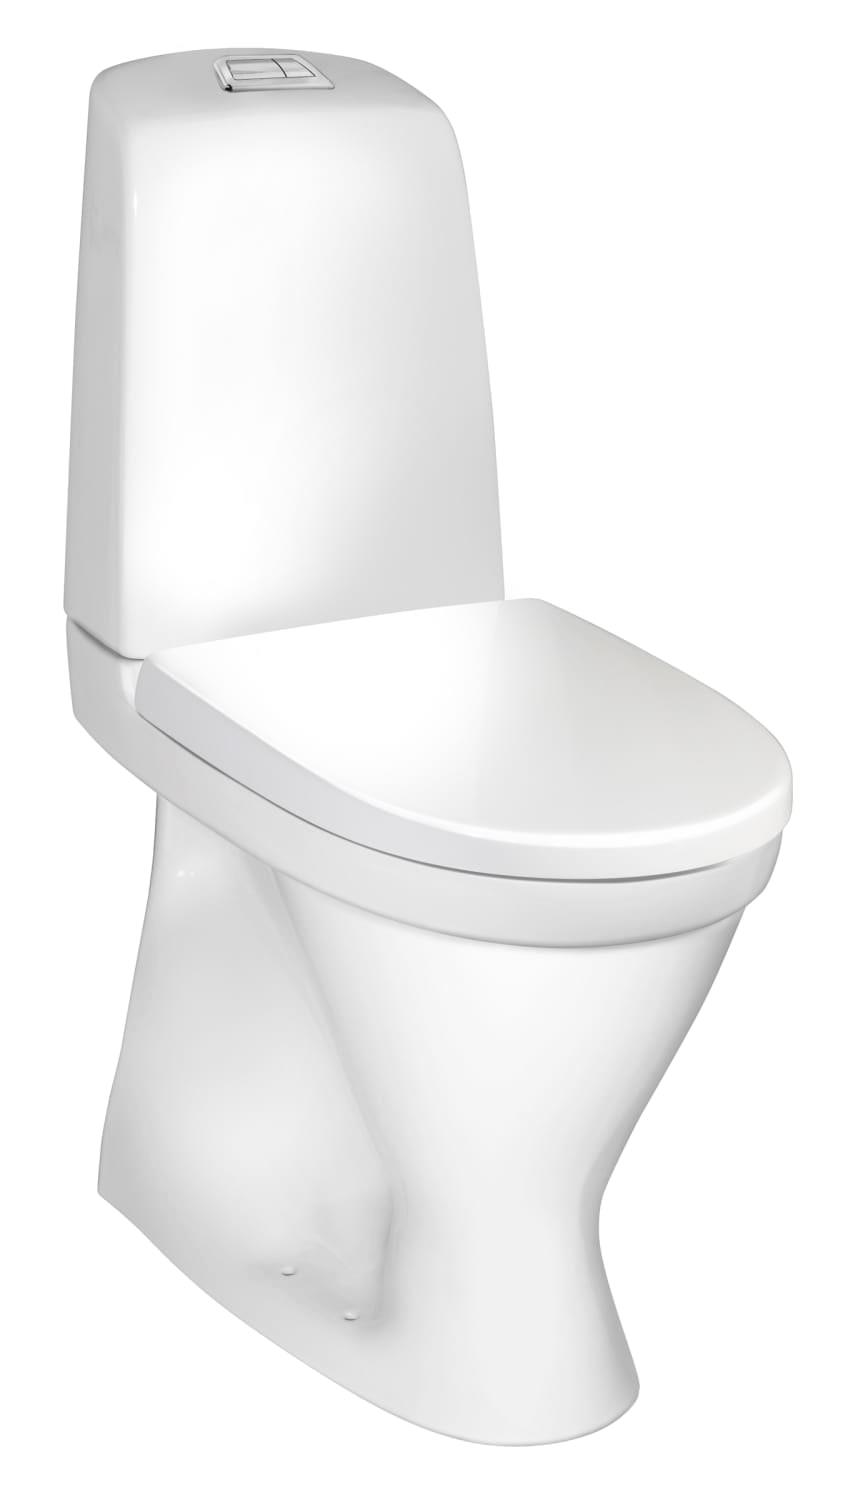 pence Tilbagekaldelse større Toilet Gustavsberg Nautic 1546l wc, høj model 46 cm - 605036414